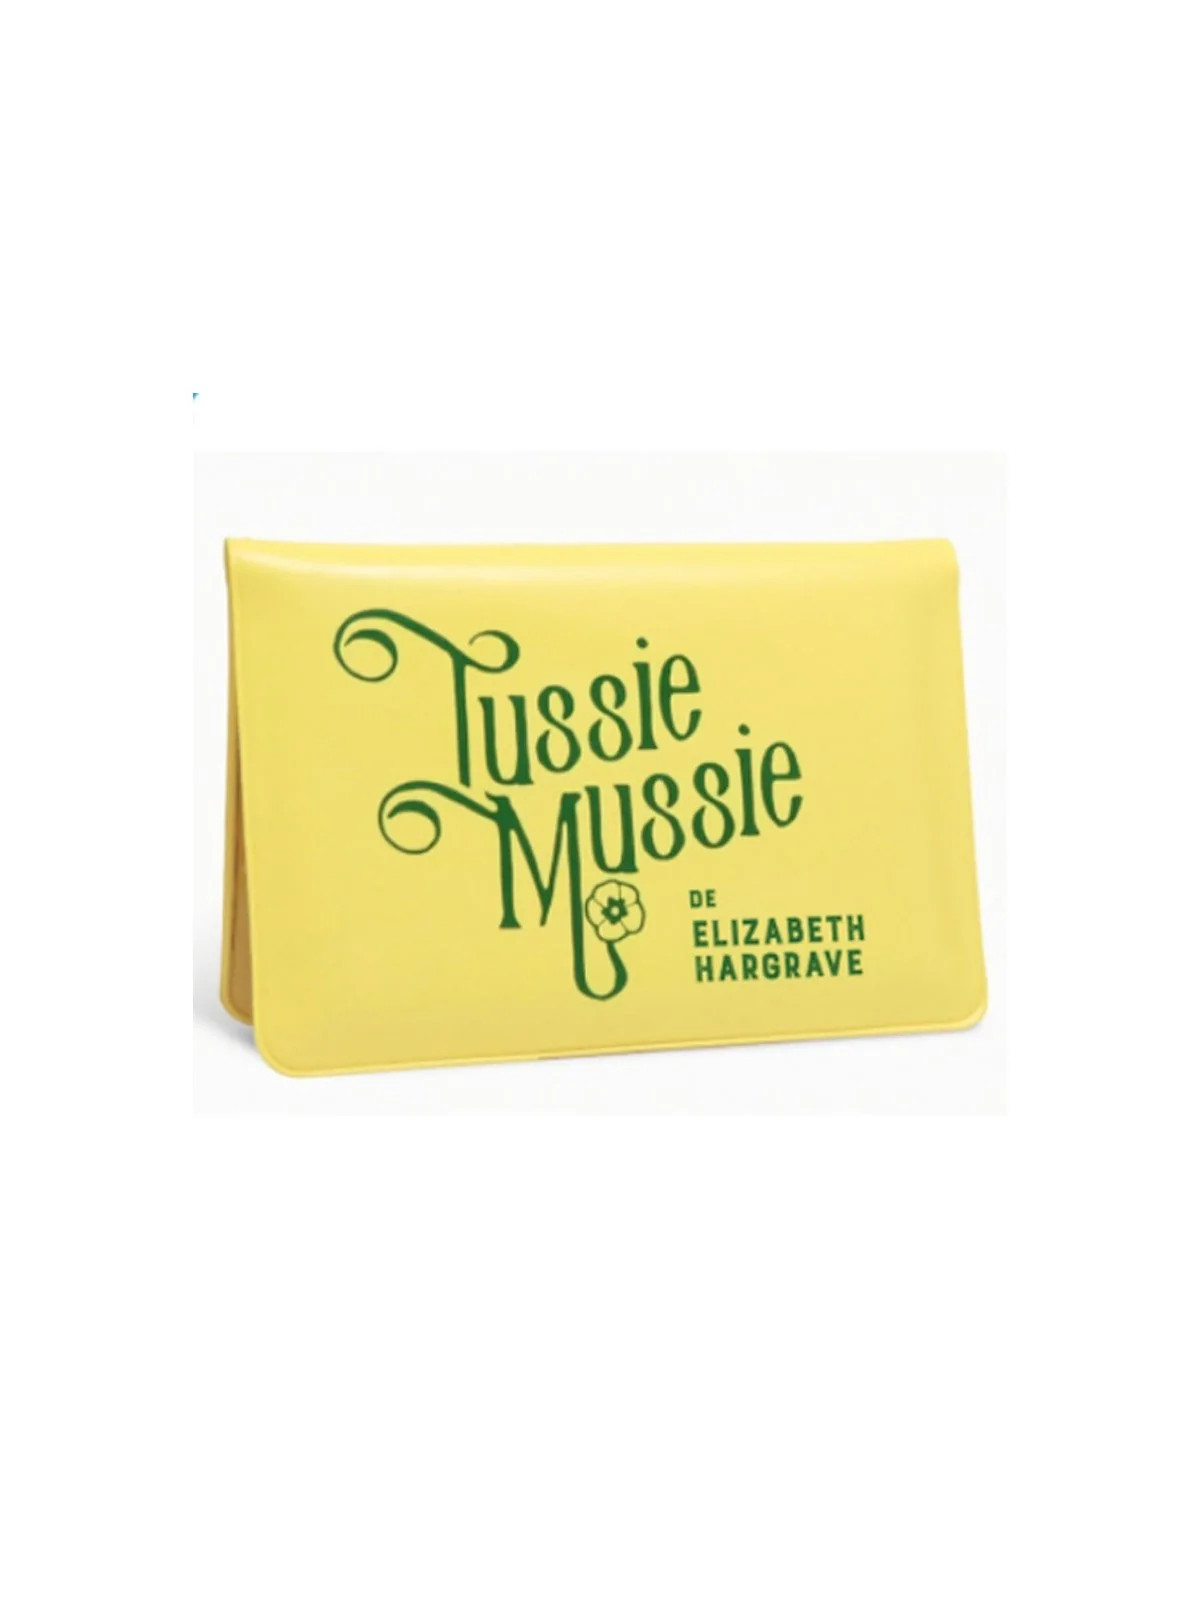 Comprar Tussie Mussie barato al mejor precio 13,46 € de Salt and Peppe